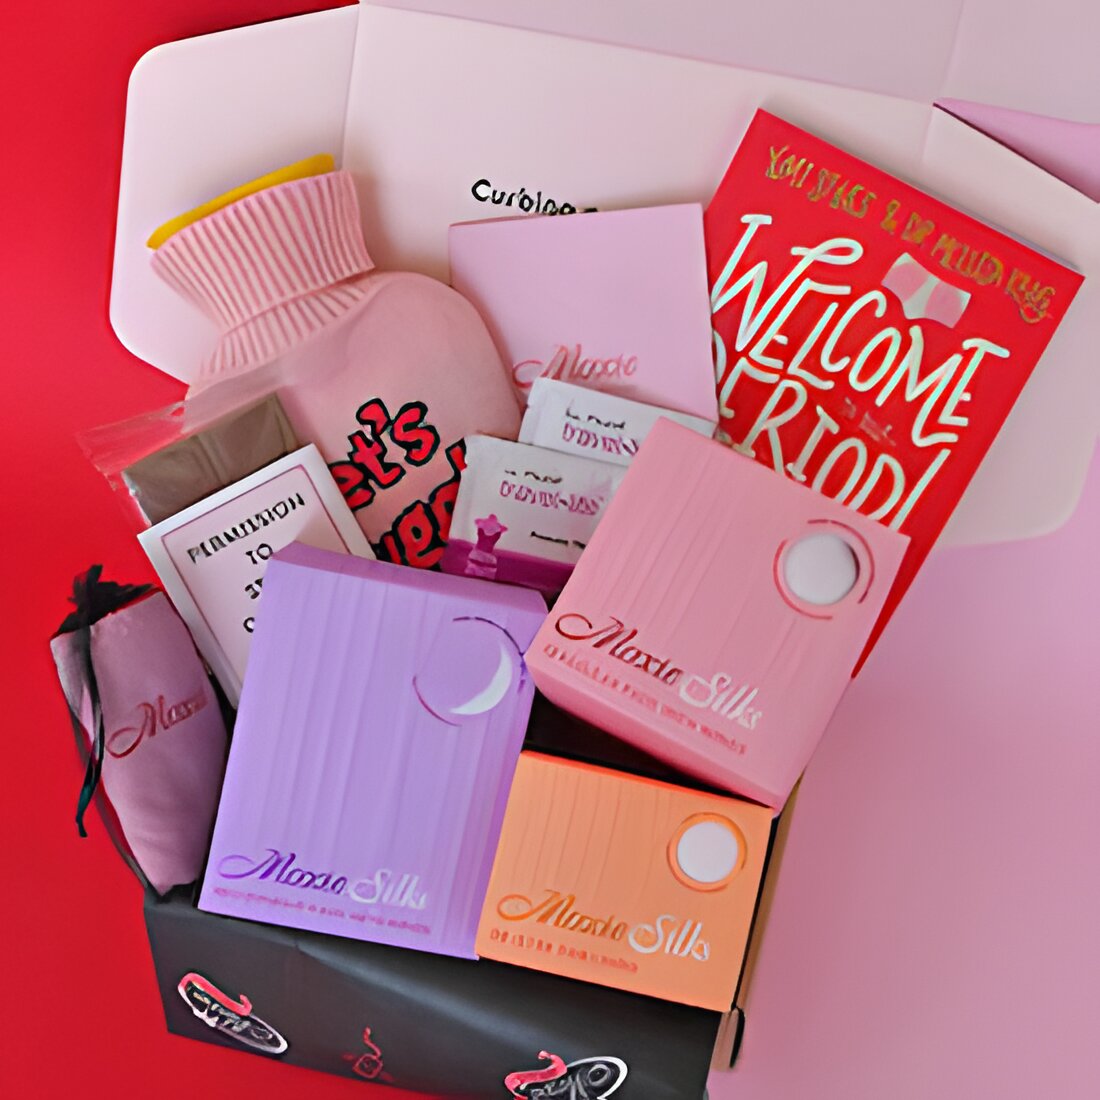 Free Period Starter Kit From Moxie Australia